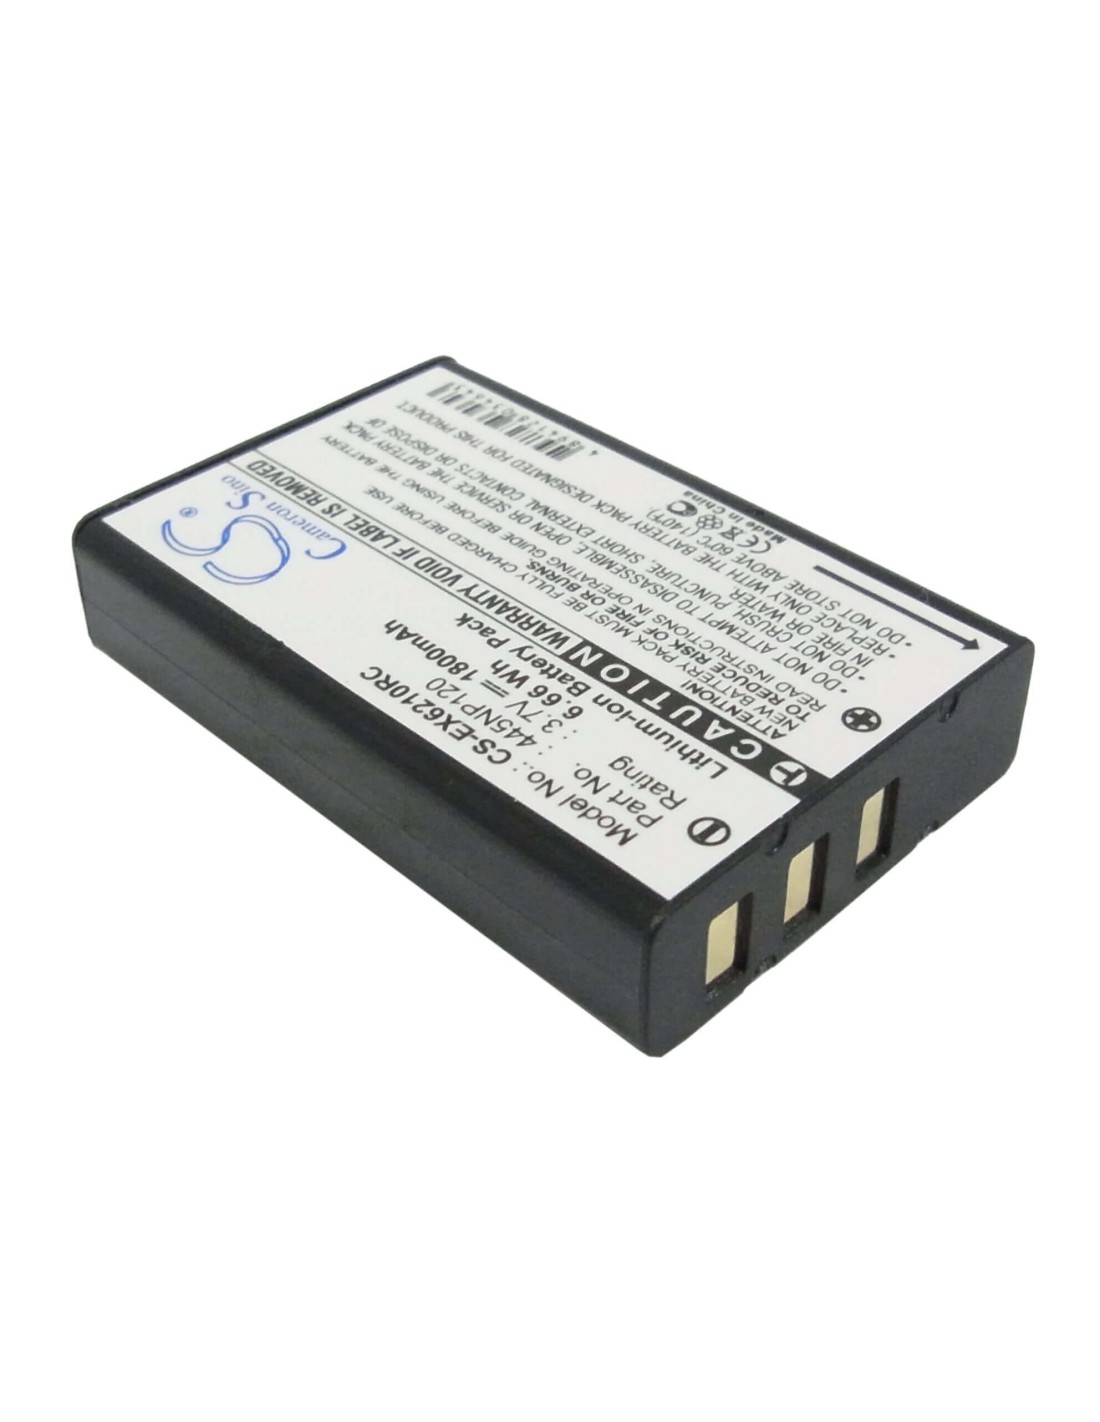 Battery for Aximcom Mr-102n 3.7V, 1800mAh - 6.66Wh